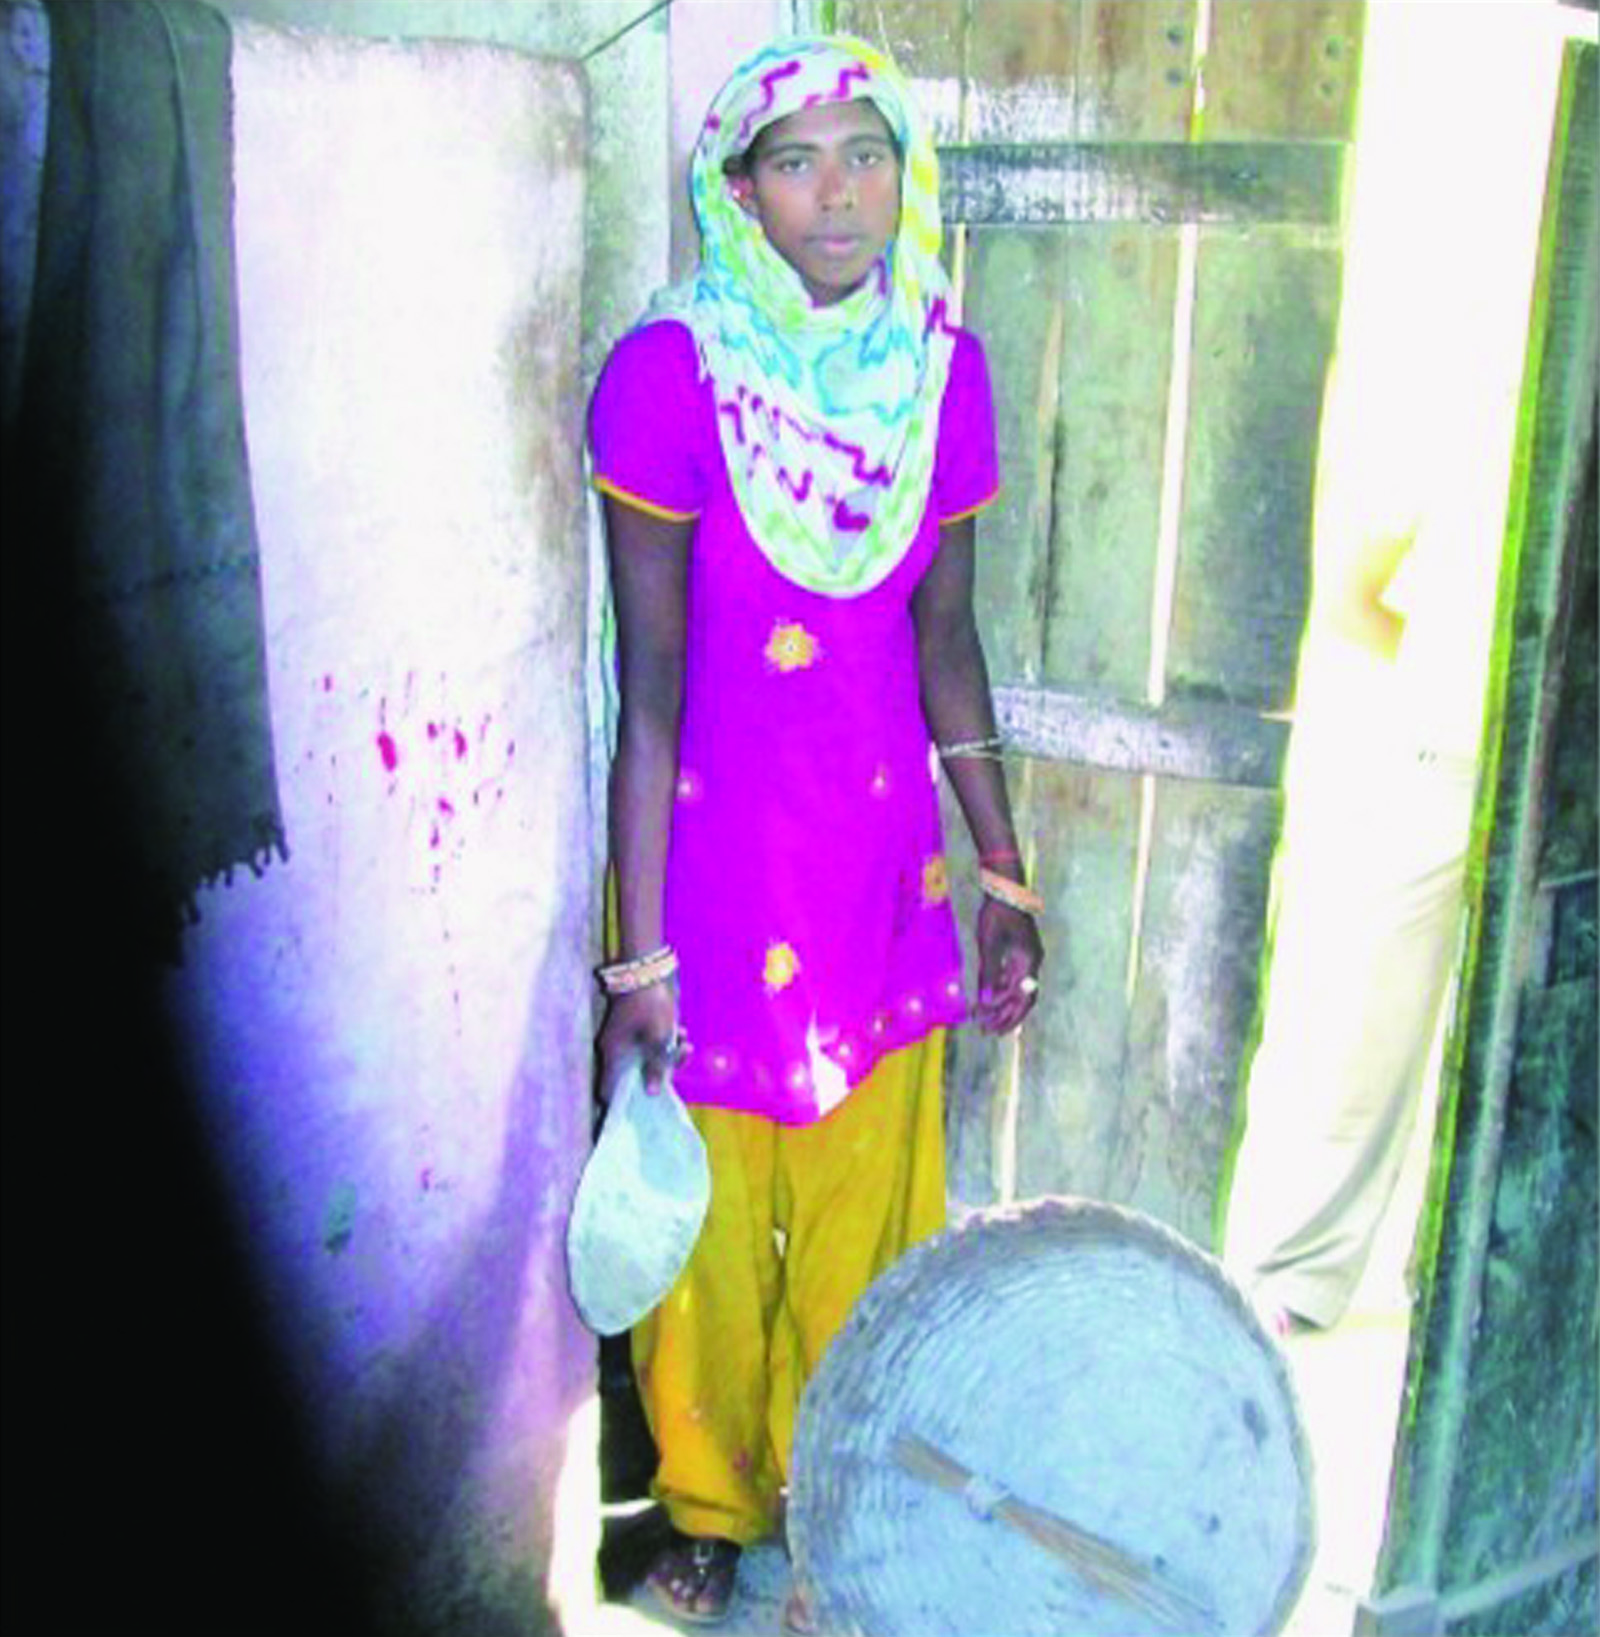 उत्तर प्रदेश के अमरोहा जिले के ढक्का गांव में मैला ढोने के काम में लगी महिला